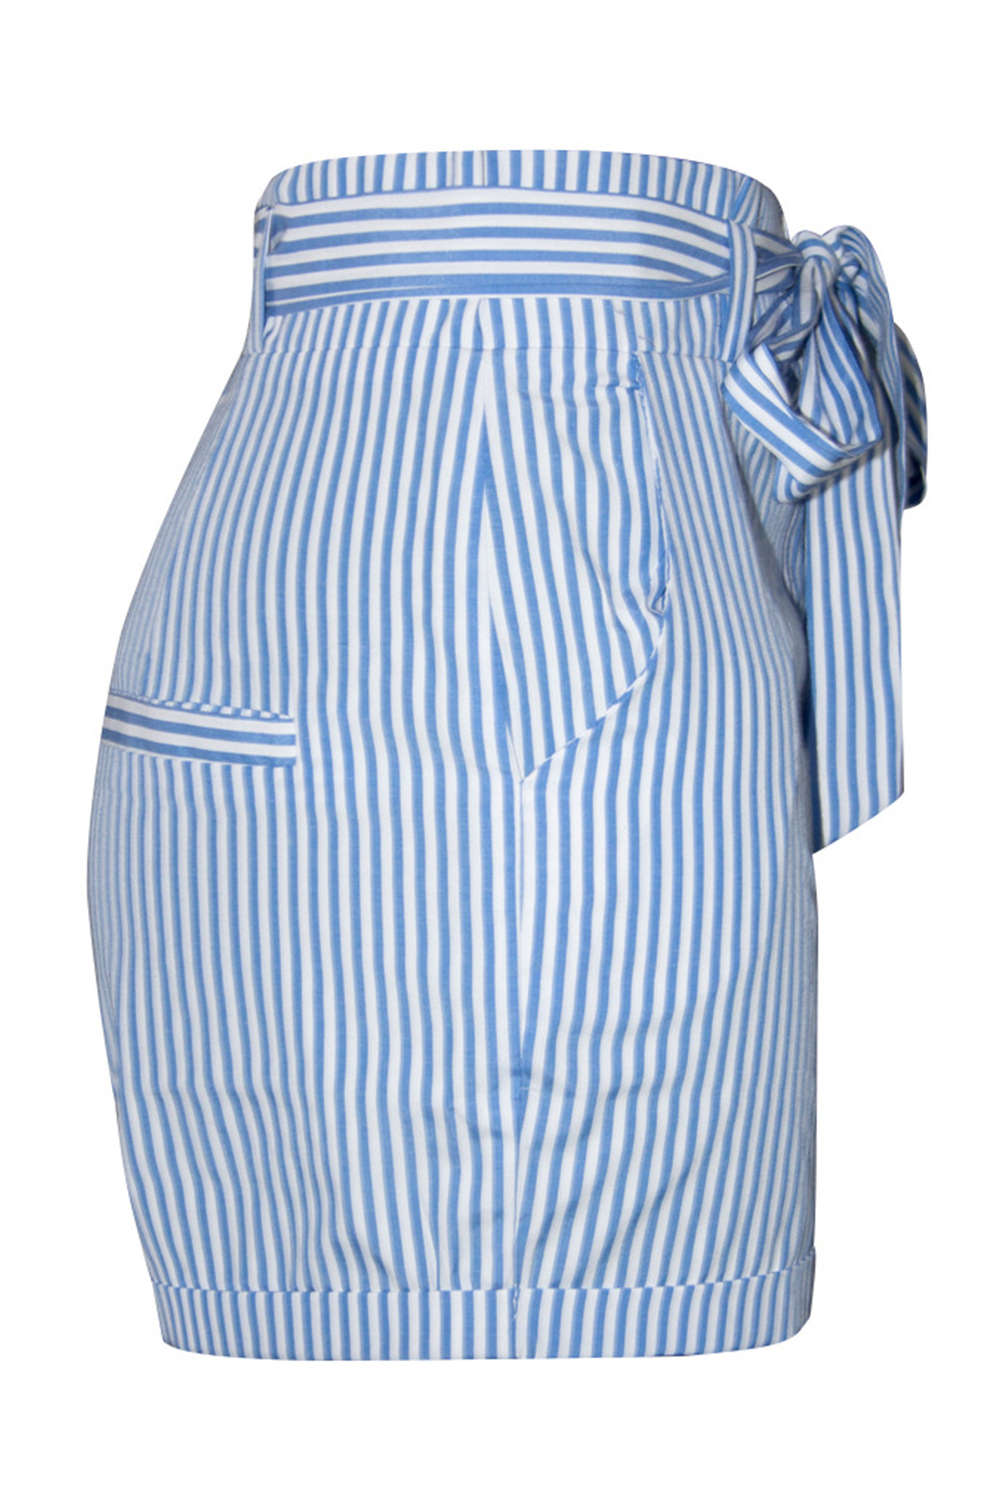 Iyasson Women's High Waist Stripe Casual Bow Shorts